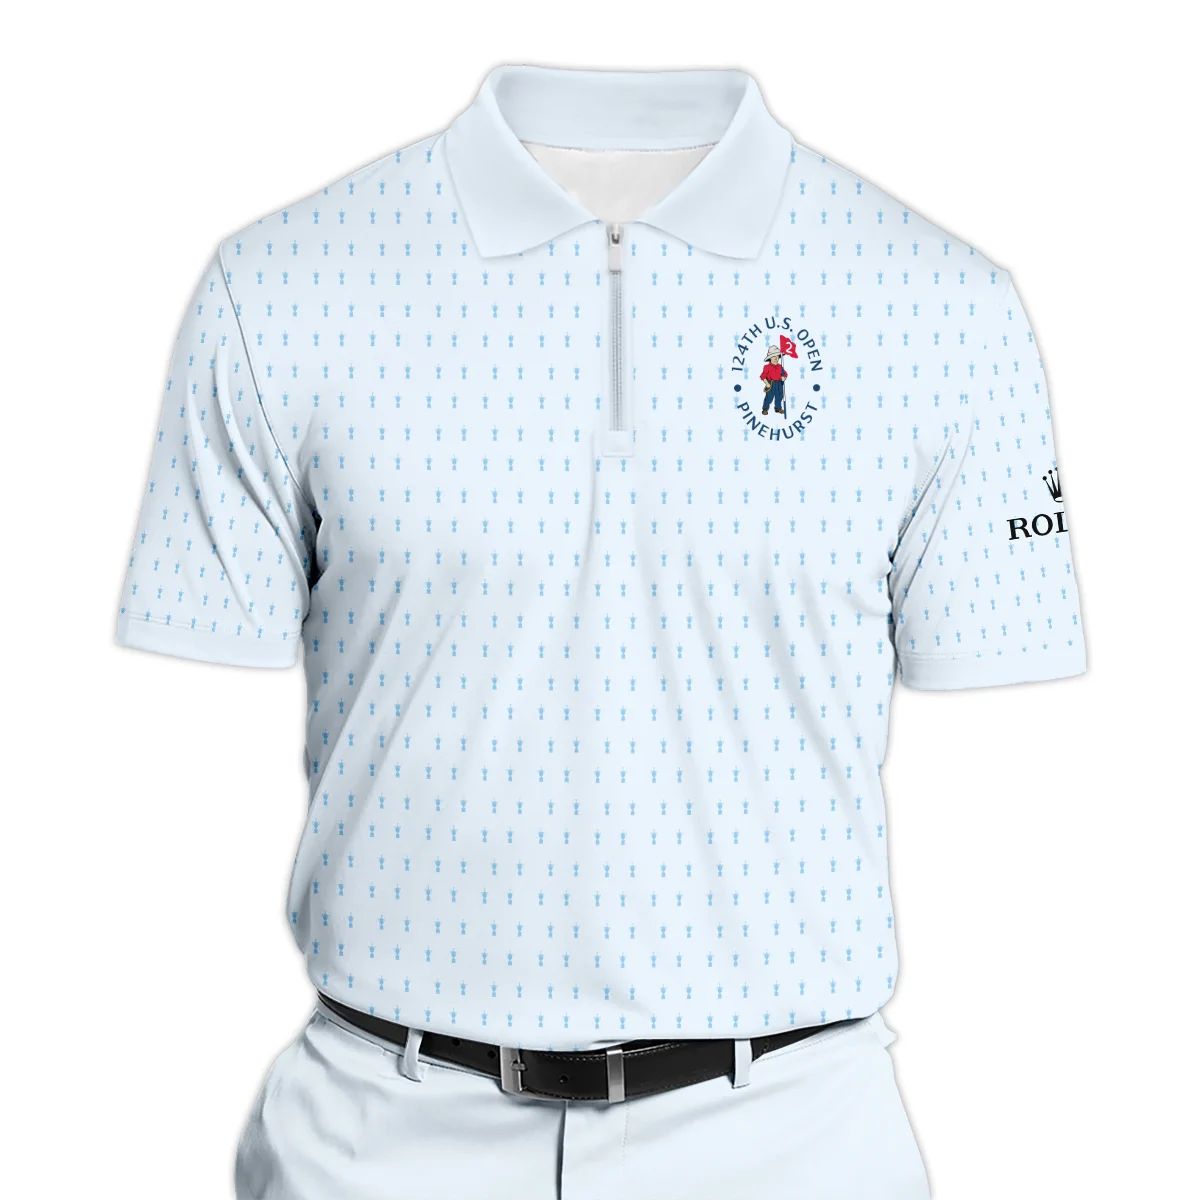 Golf Pattern Cup Light Blue Green 124th U.S. Open Pinehurst Rolex Zipper Polo Shirt Style Classic Zipper Polo Shirt For Men